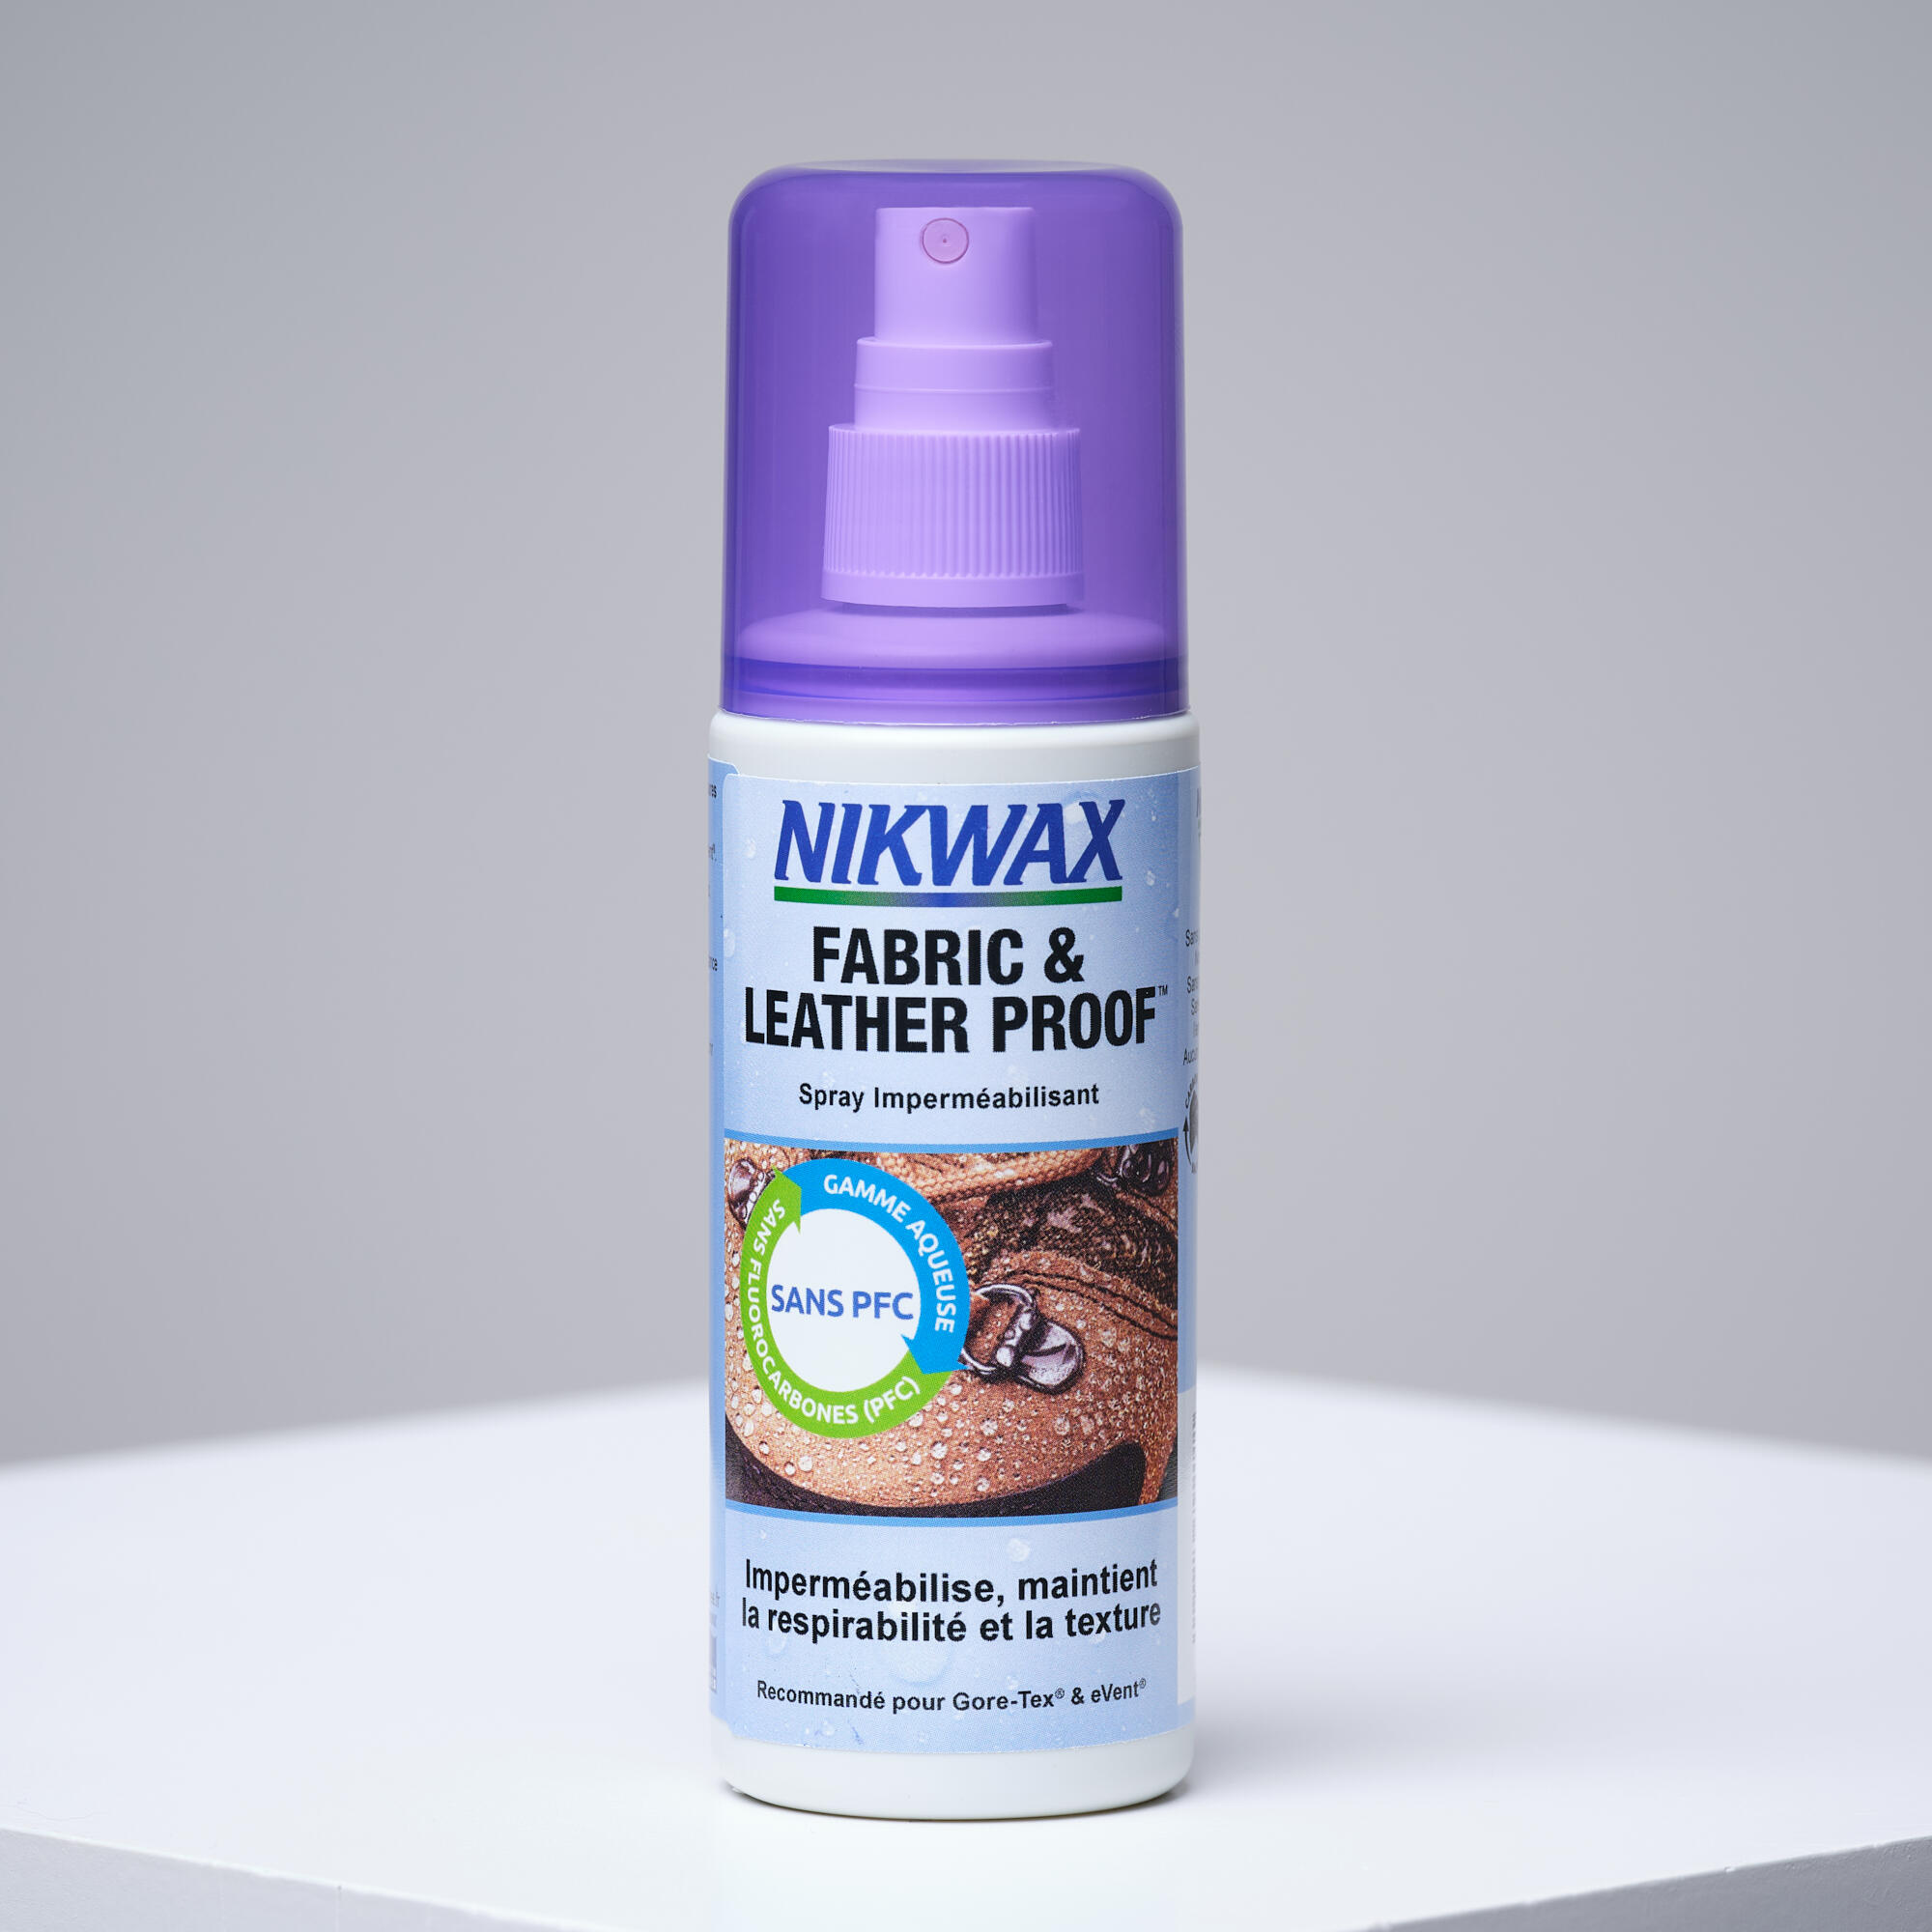 Spray de reimpermeabilizare tratament hidrofob pentru piele È™i textile Nikwax